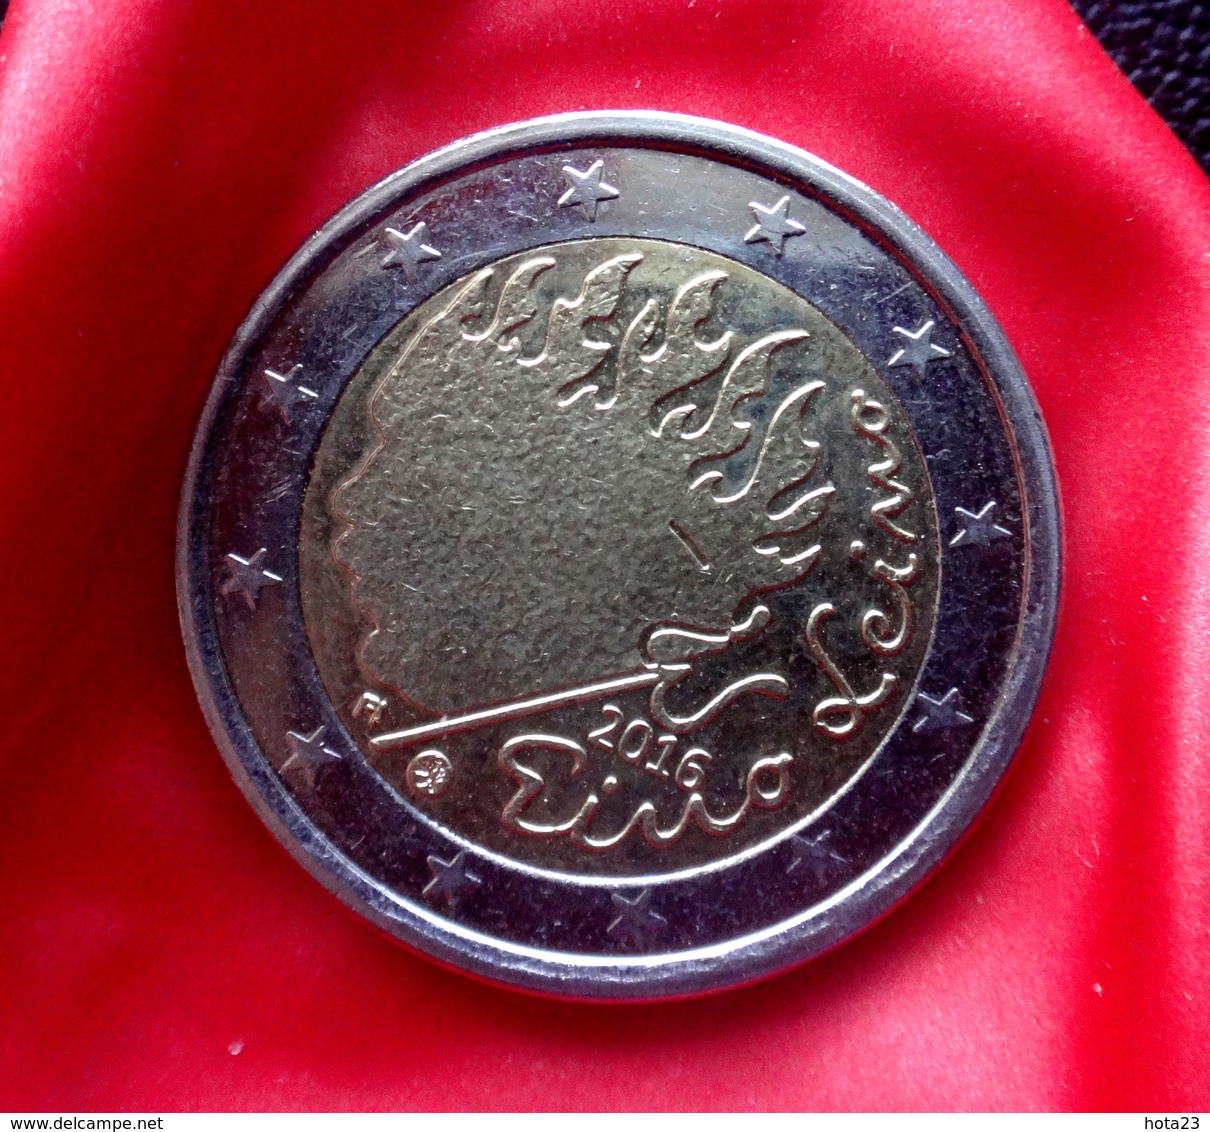 Finland 2016 - 2 Euro Comm - Finnish Writer & Lyricist - Eino Leino Coin  CIRCULATED - Finland